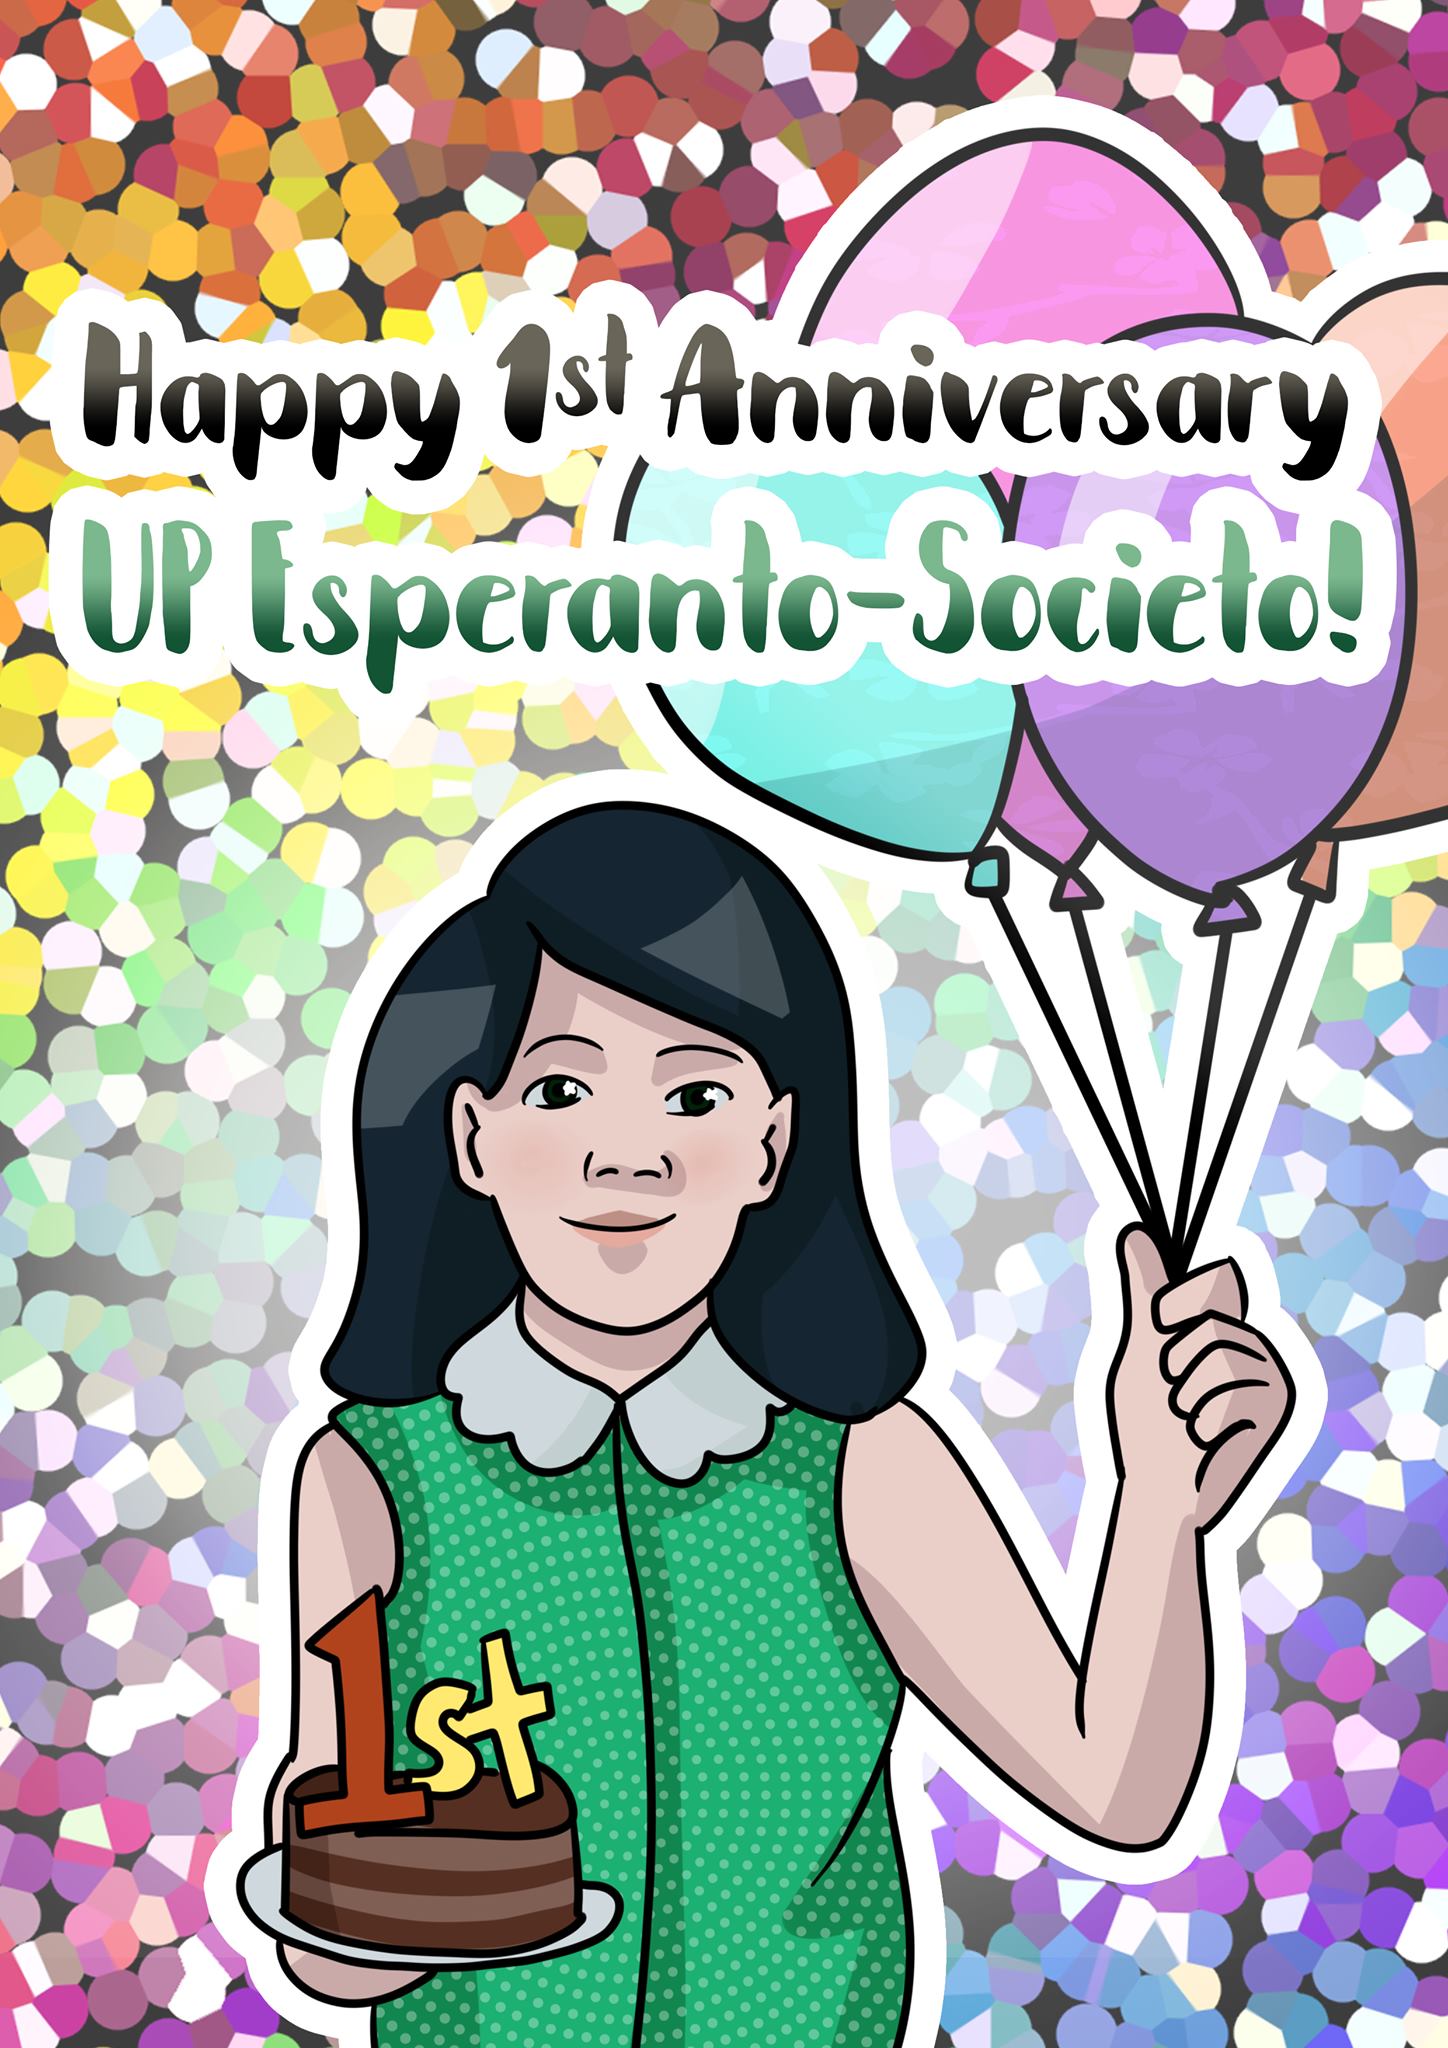 Happy 1st Anniversary, UP Esperas!